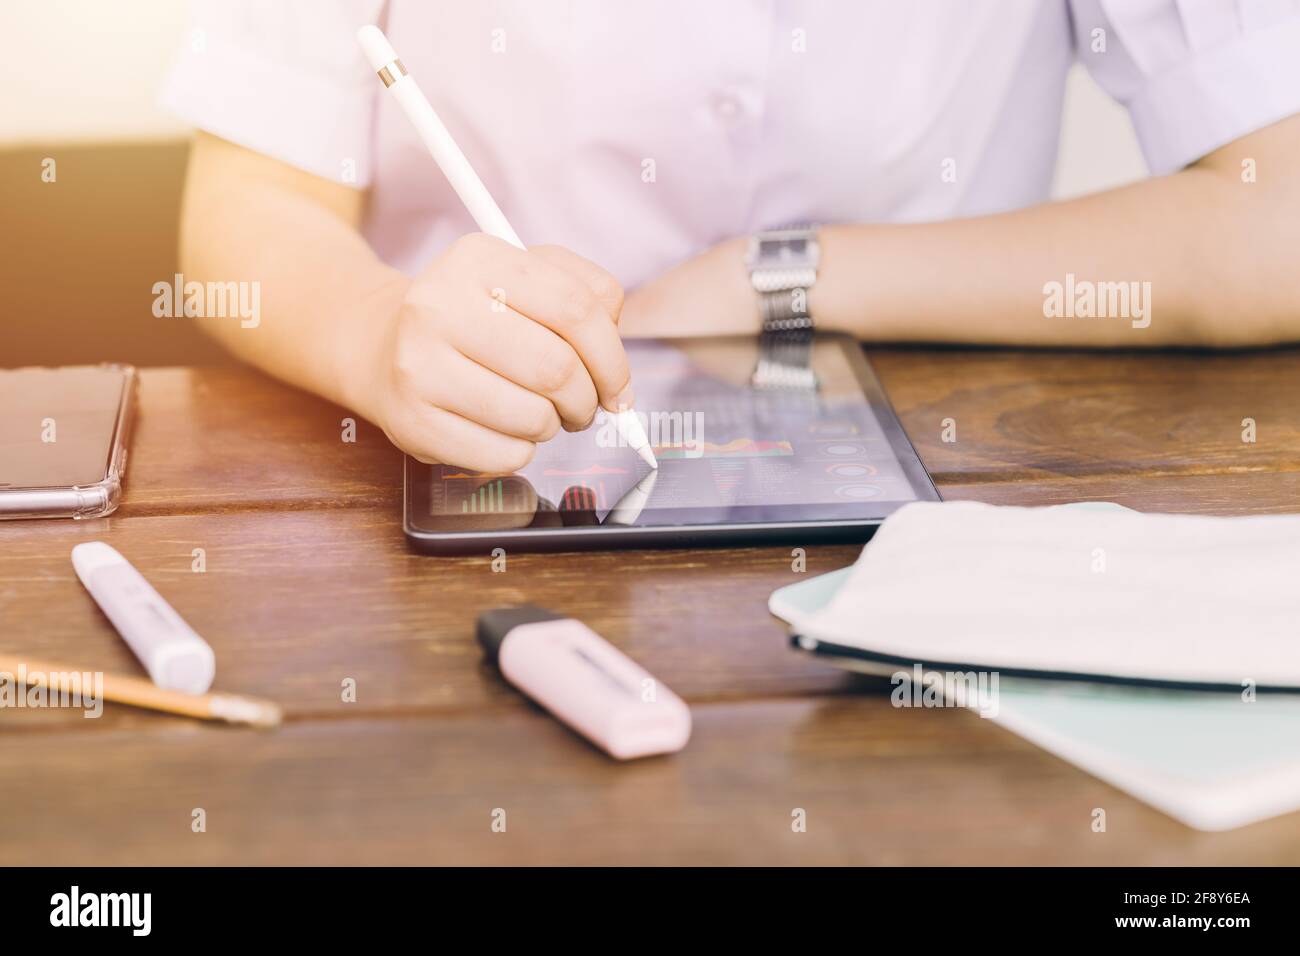 Studente scolastico che utilizza un tablet touchscreen per imparare e scrivere i compiti, tecnologia moderna per l'istruzione Foto Stock